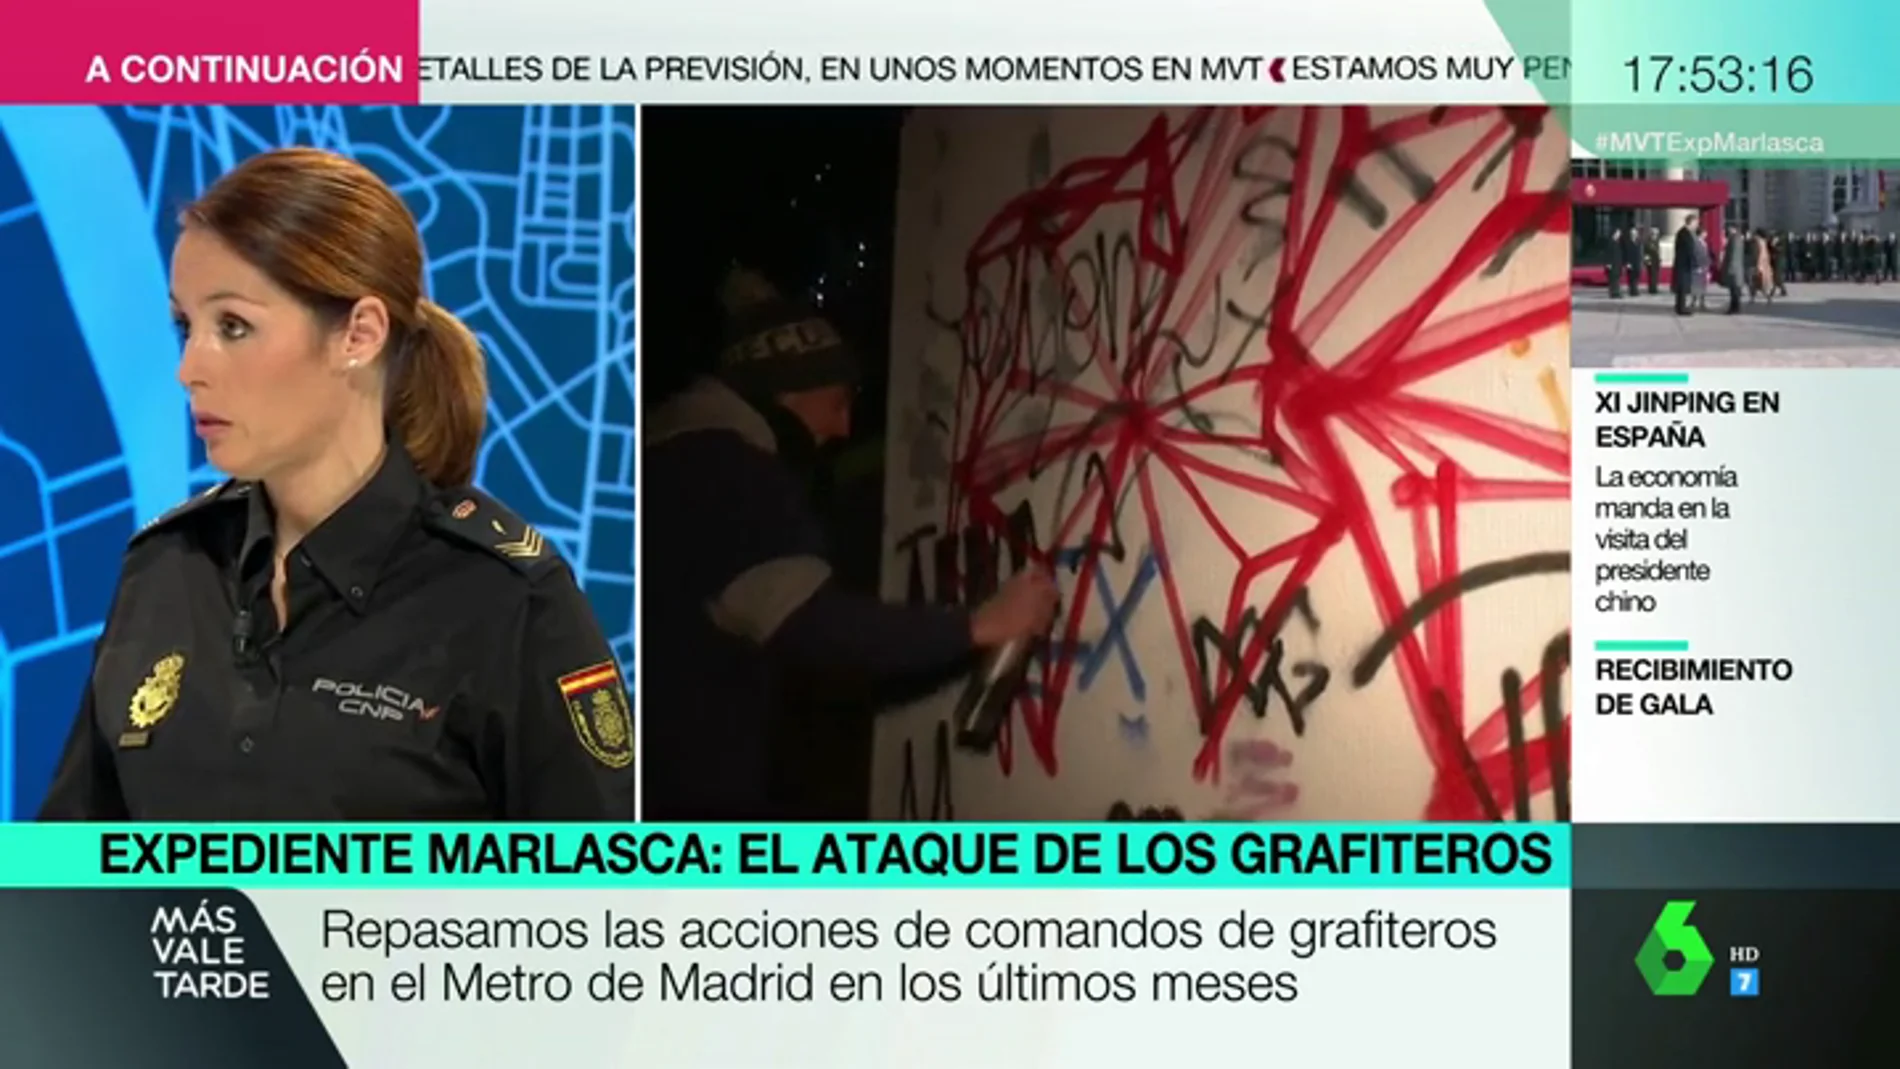 Analizamos el perfil de los grafiteros con una oficial de Policía: "La clase social va desde los parados hasta los hijos de familias adineradas"